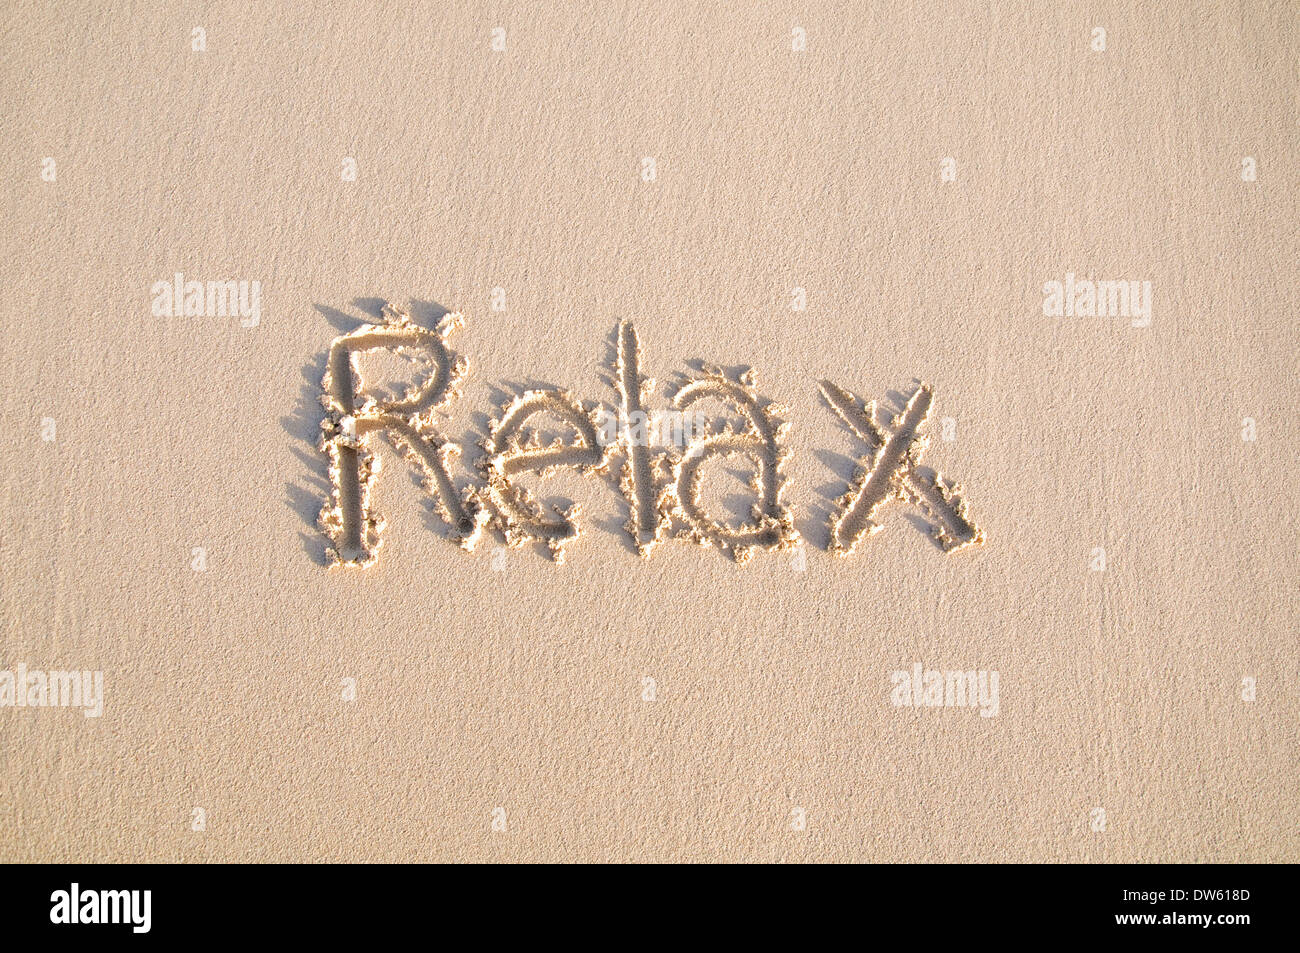 Wort "Relax" auf einem Sand geschrieben. Stockfoto